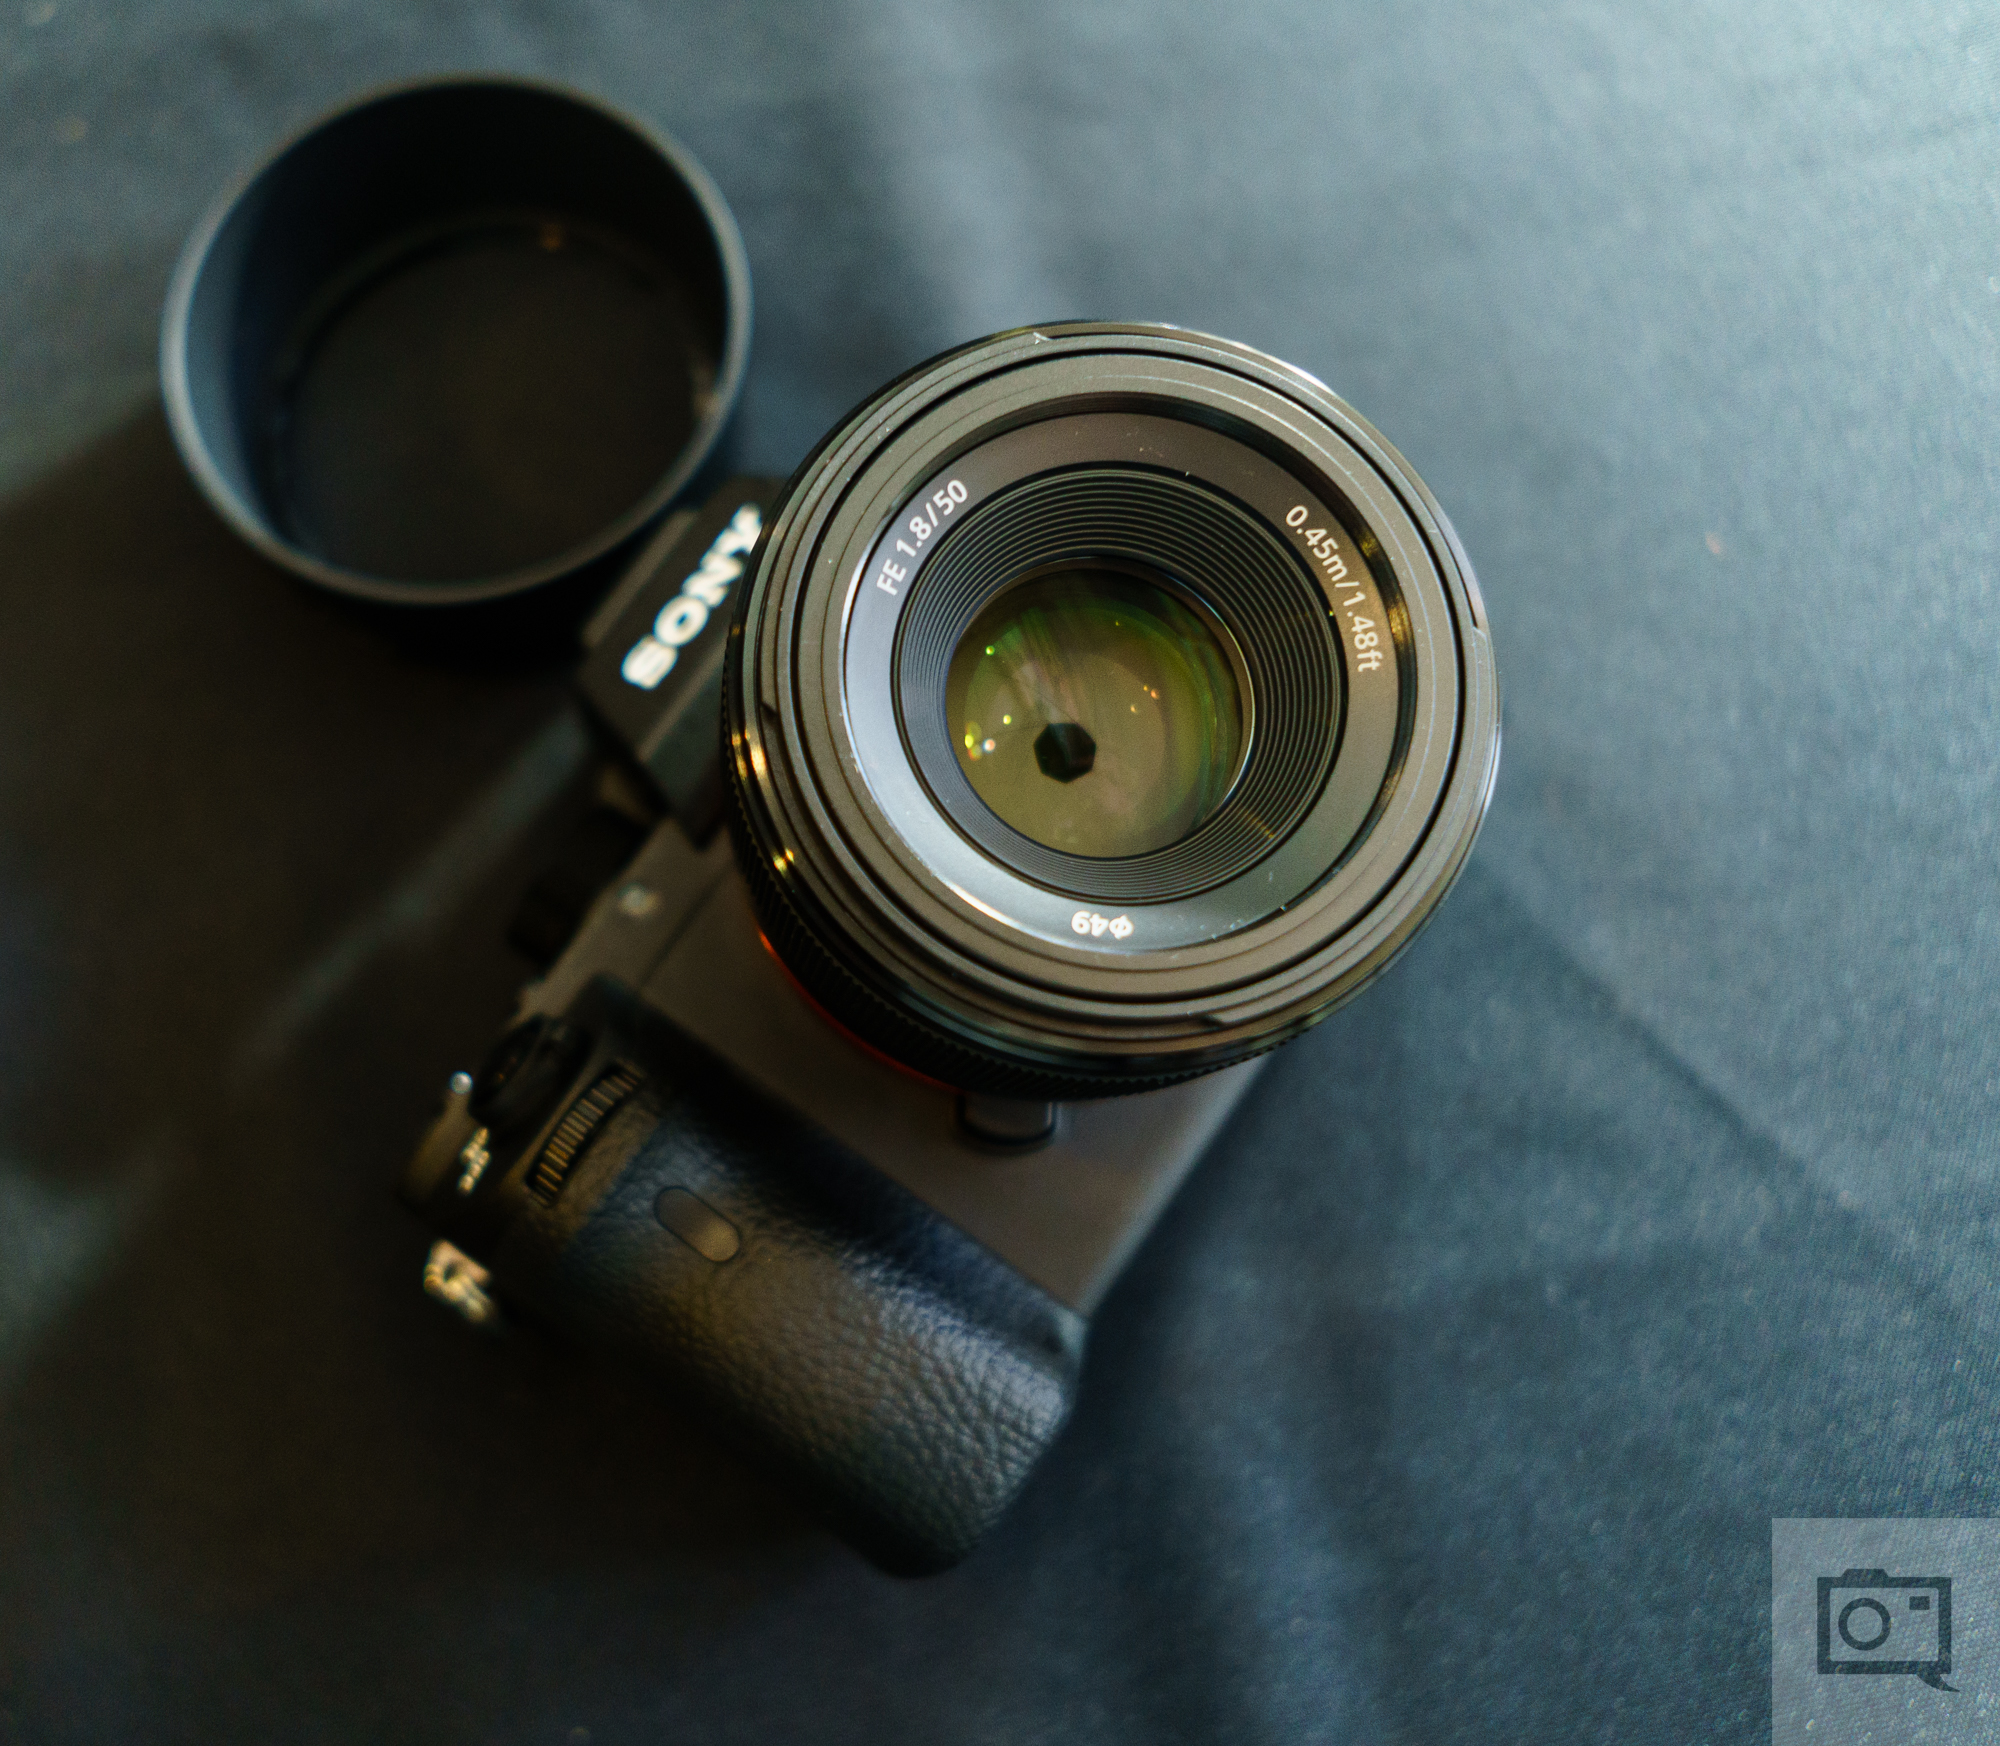 Sony A6300 Camera and Sony FE 50mm F1.8 Lens